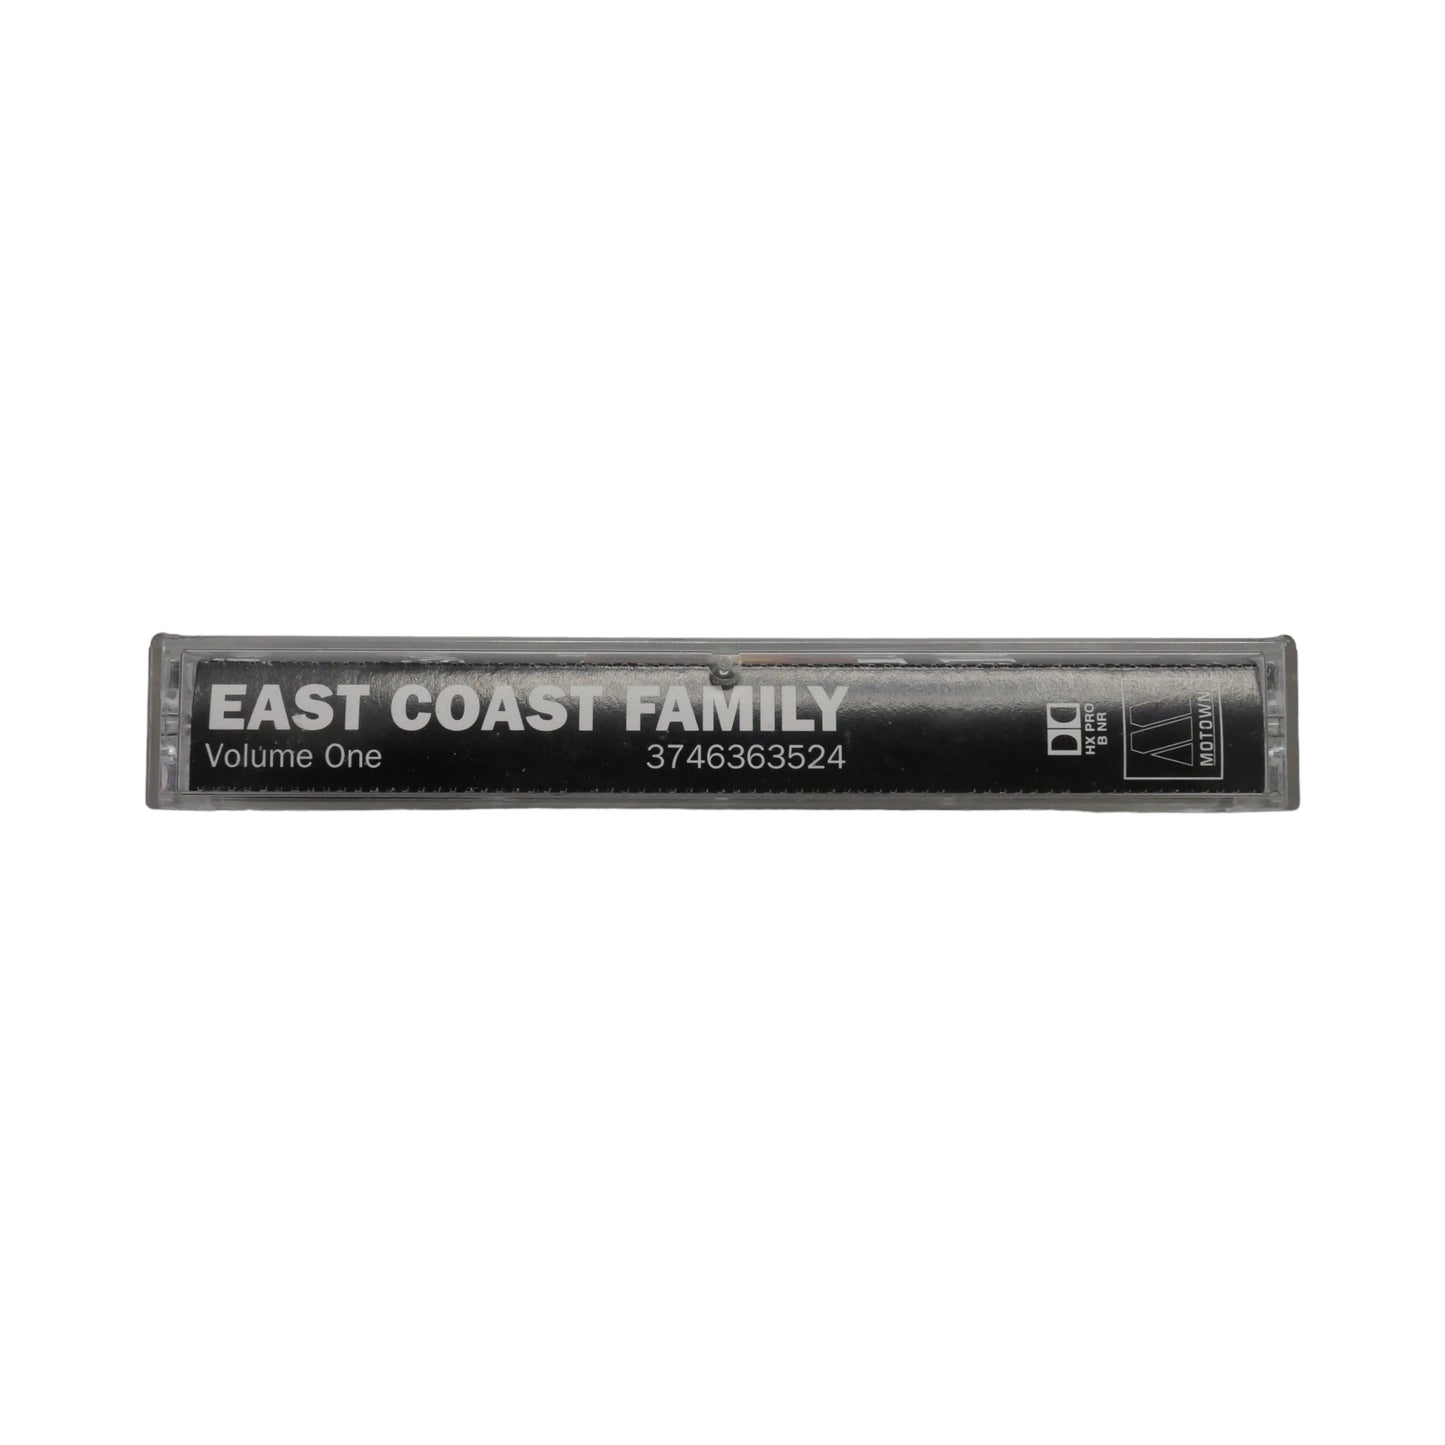 East Coast Family Volume One Cassette